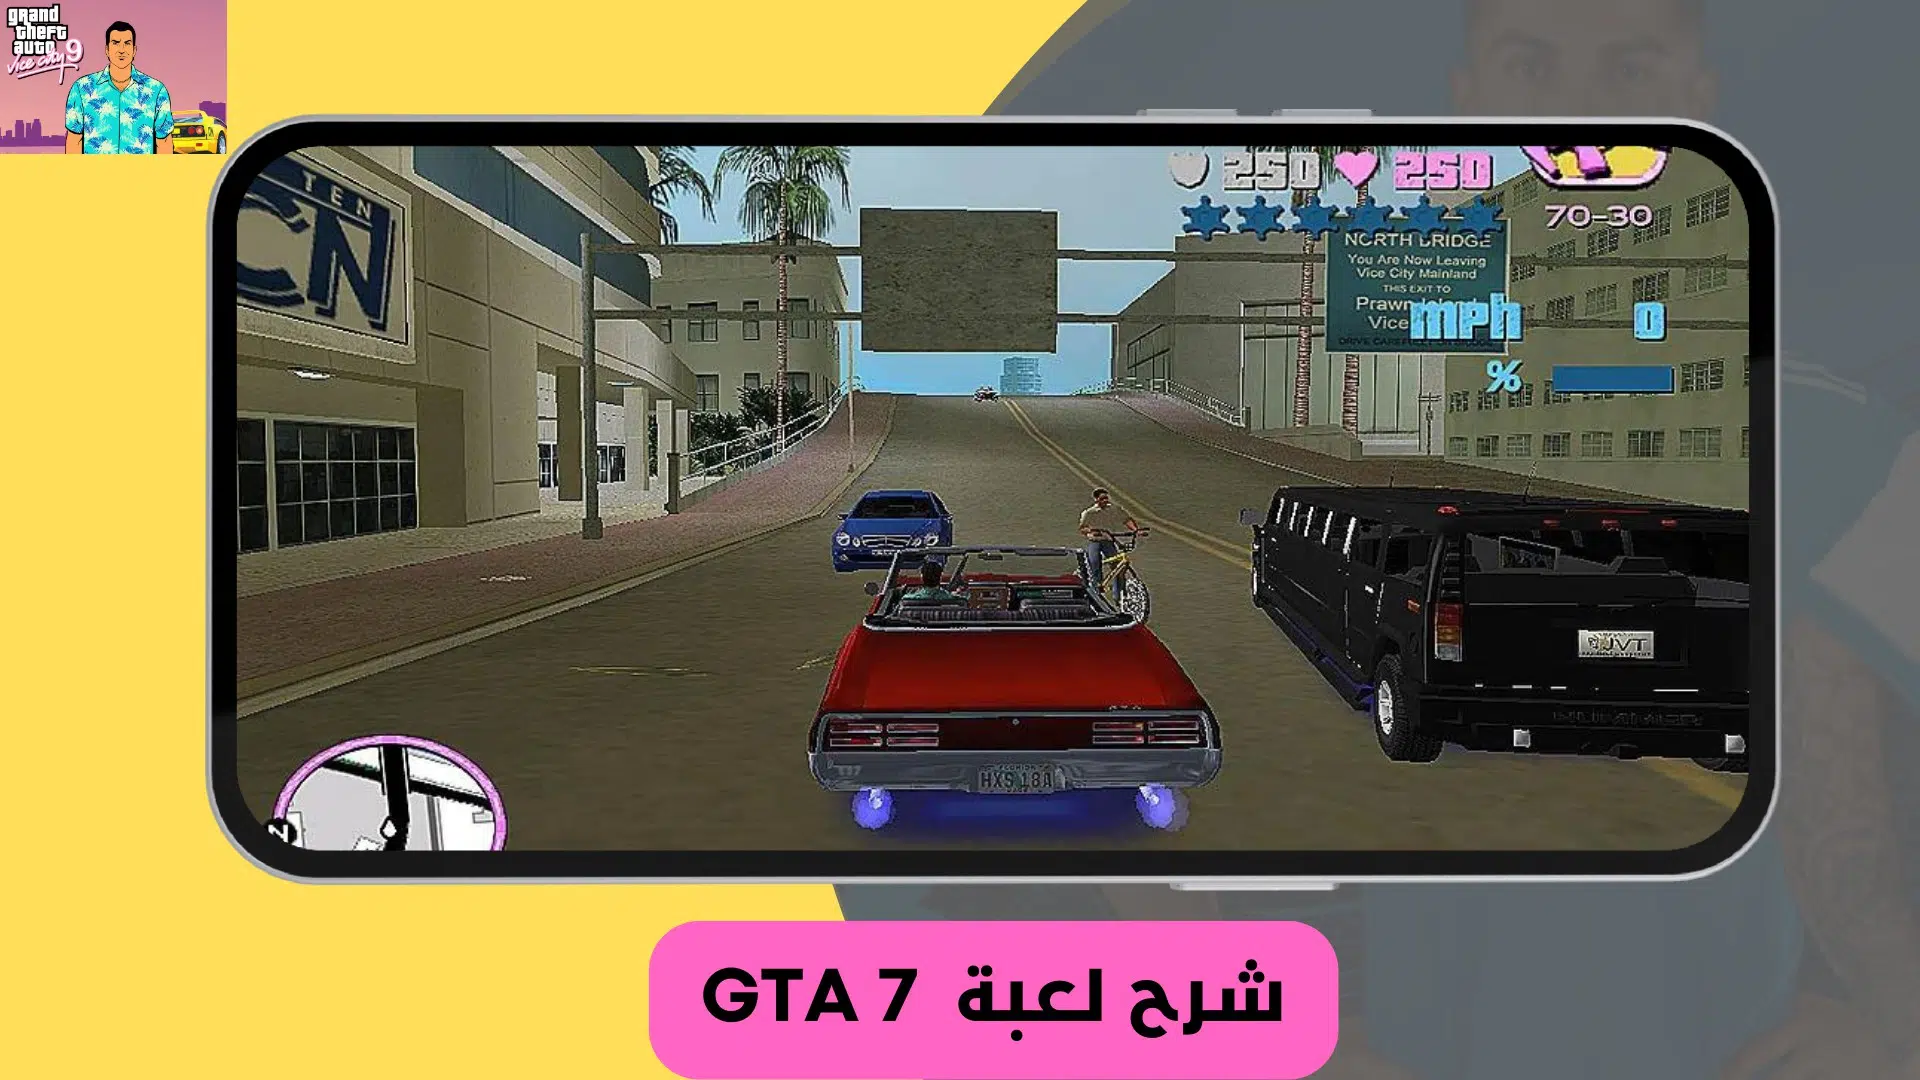 تنزيل لعبة جاتا 7 للموبايل من ميديا فاير GTA 7 apk